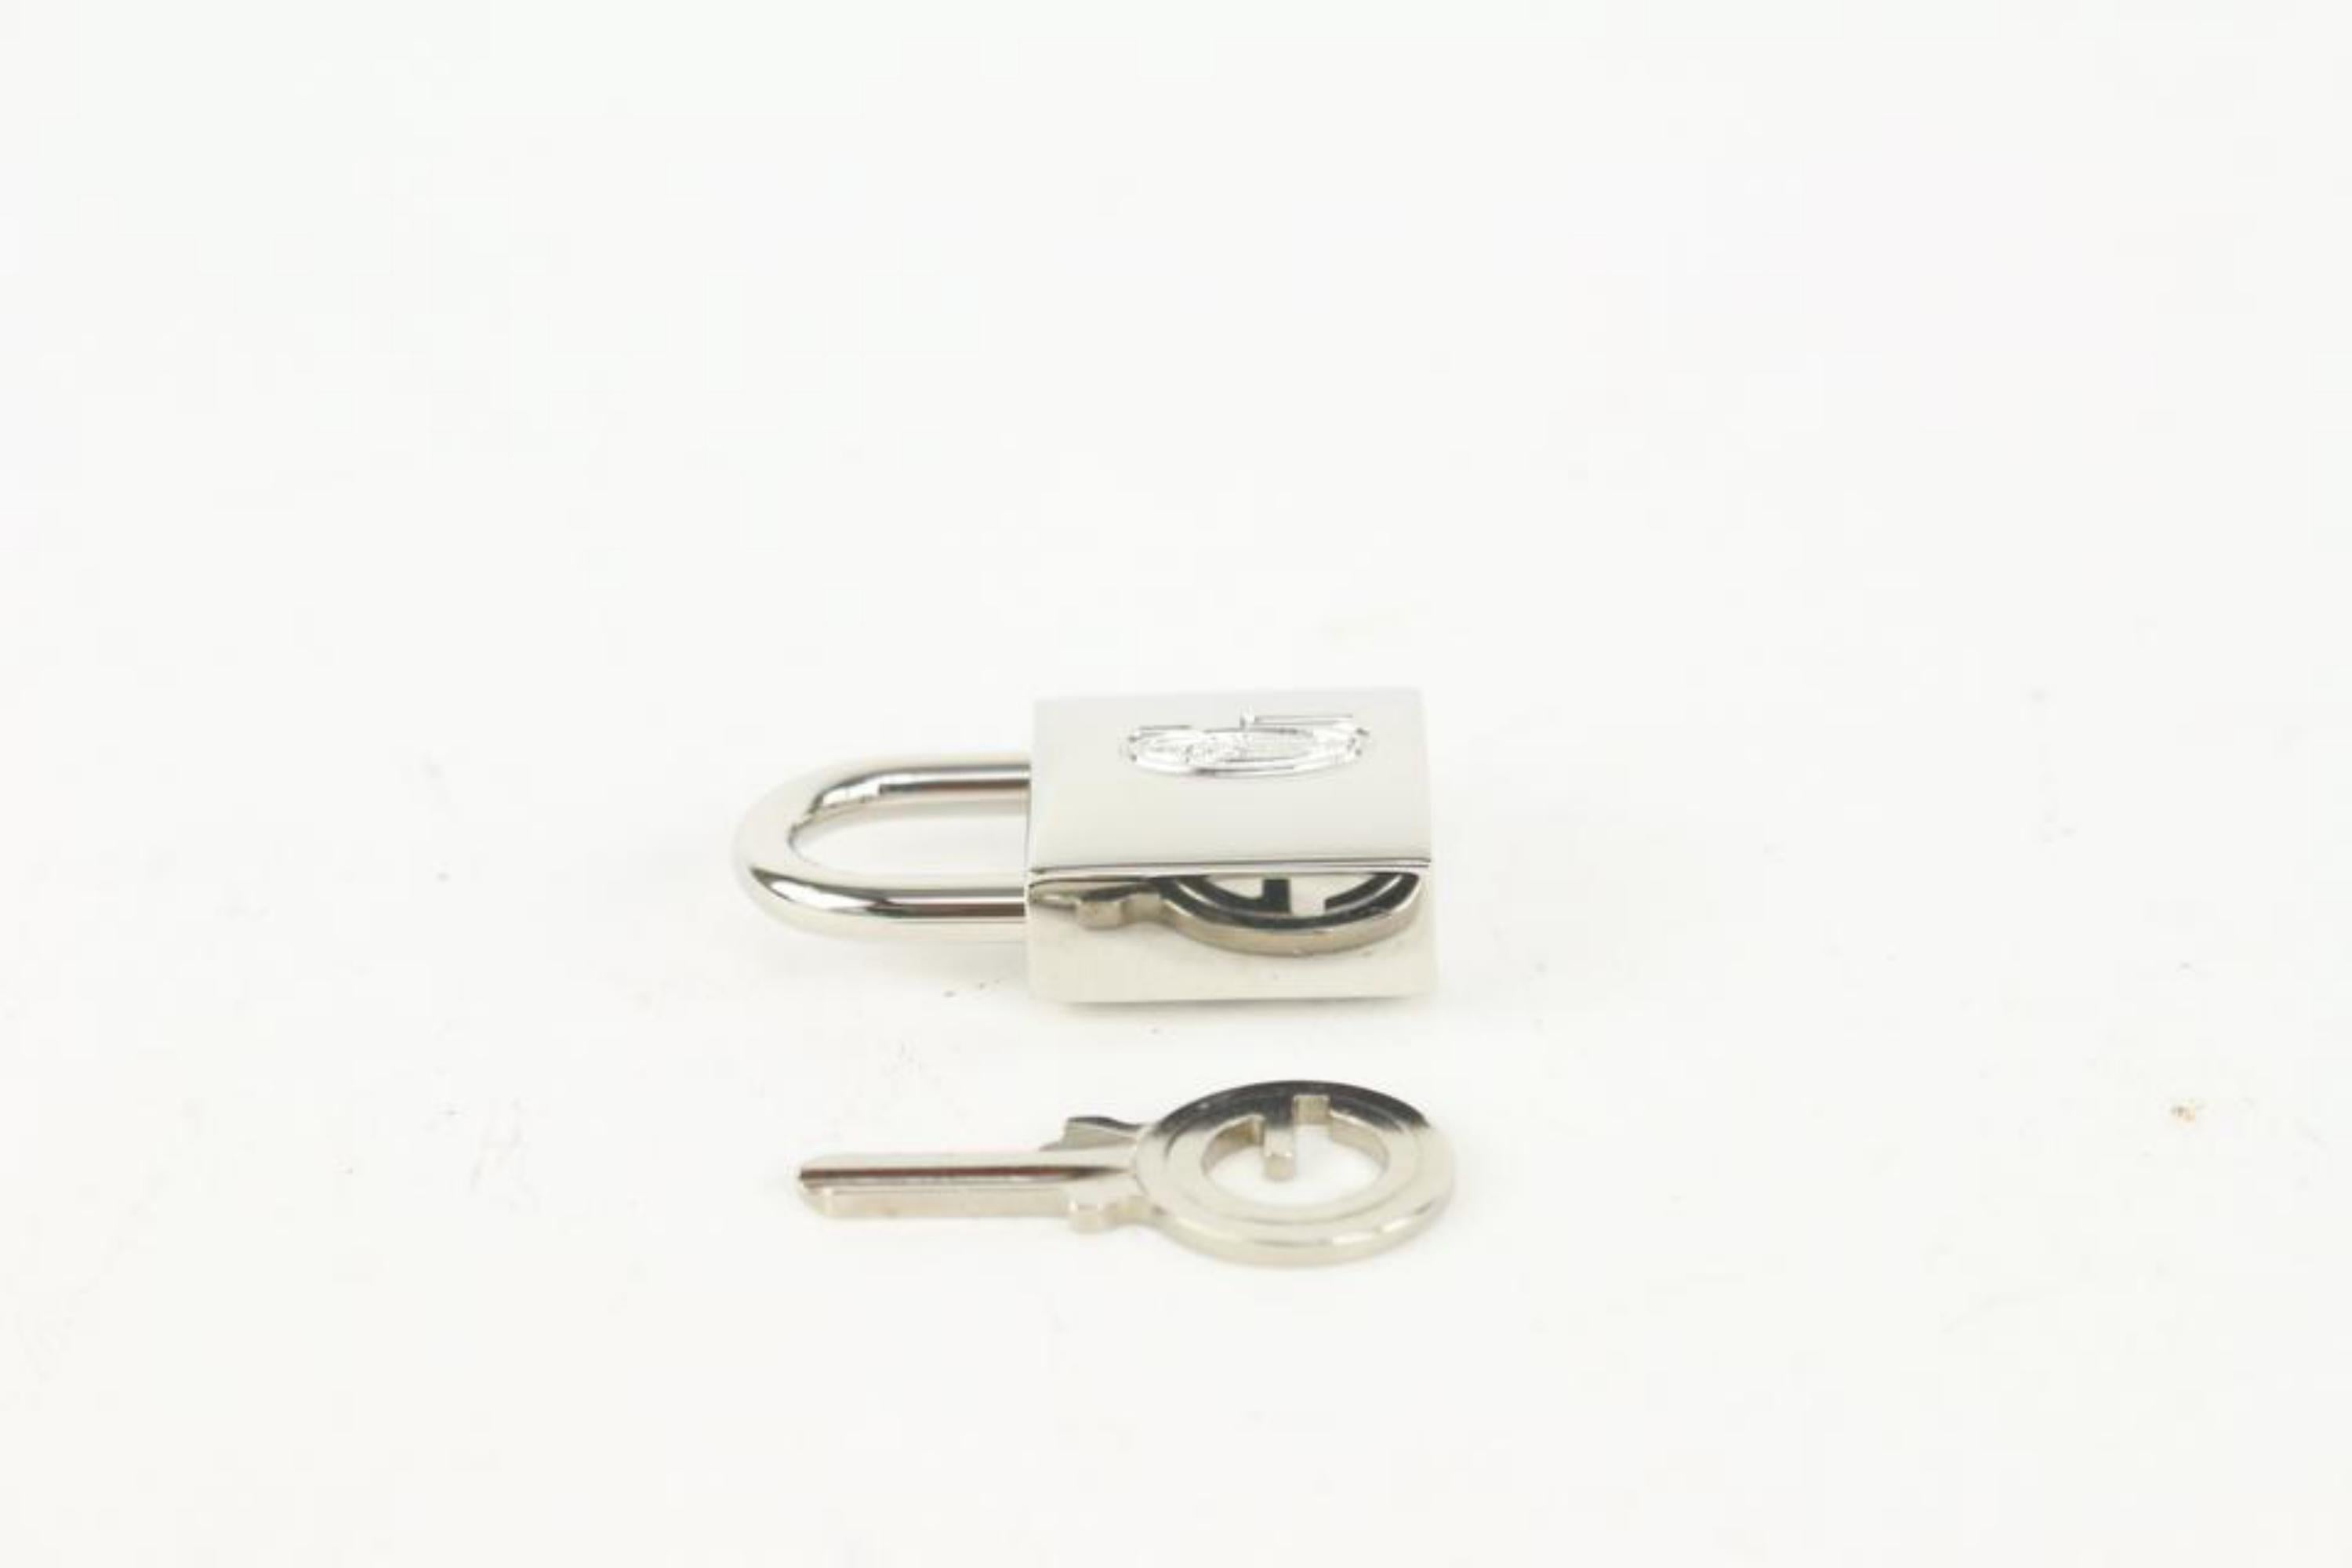 Goyard Silver Lock and Key Set Cadena Bag Charm 1012gy30 3